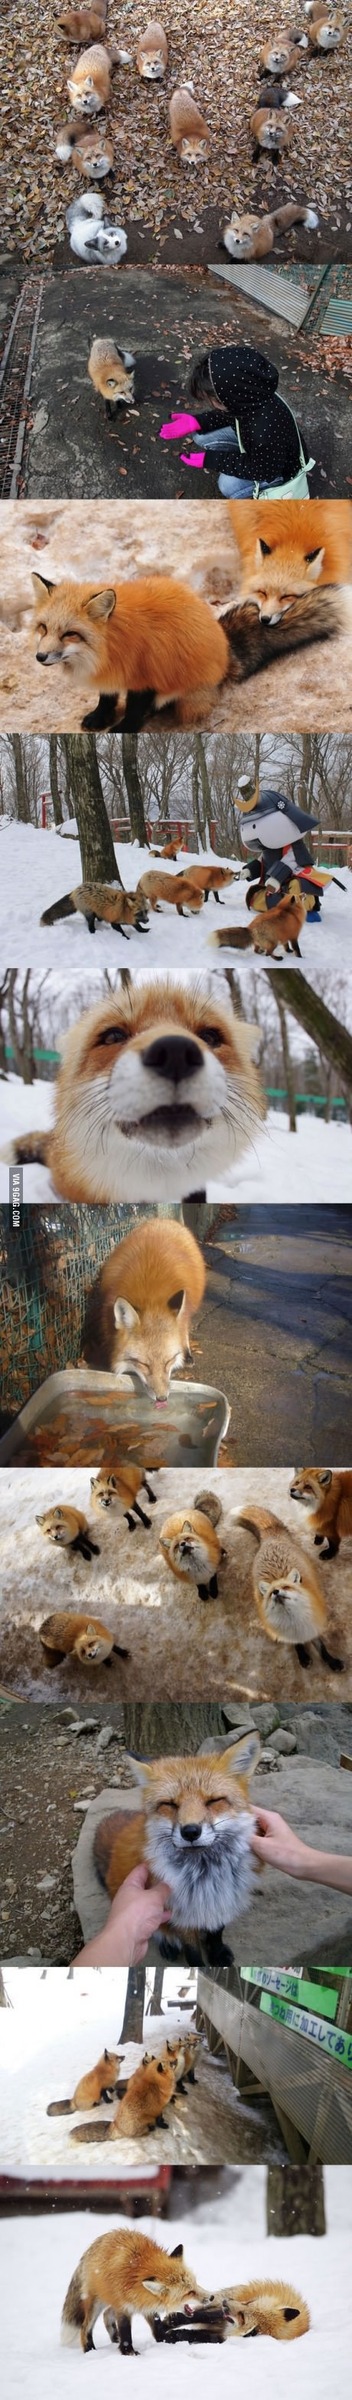 Fox village in Japan - meme